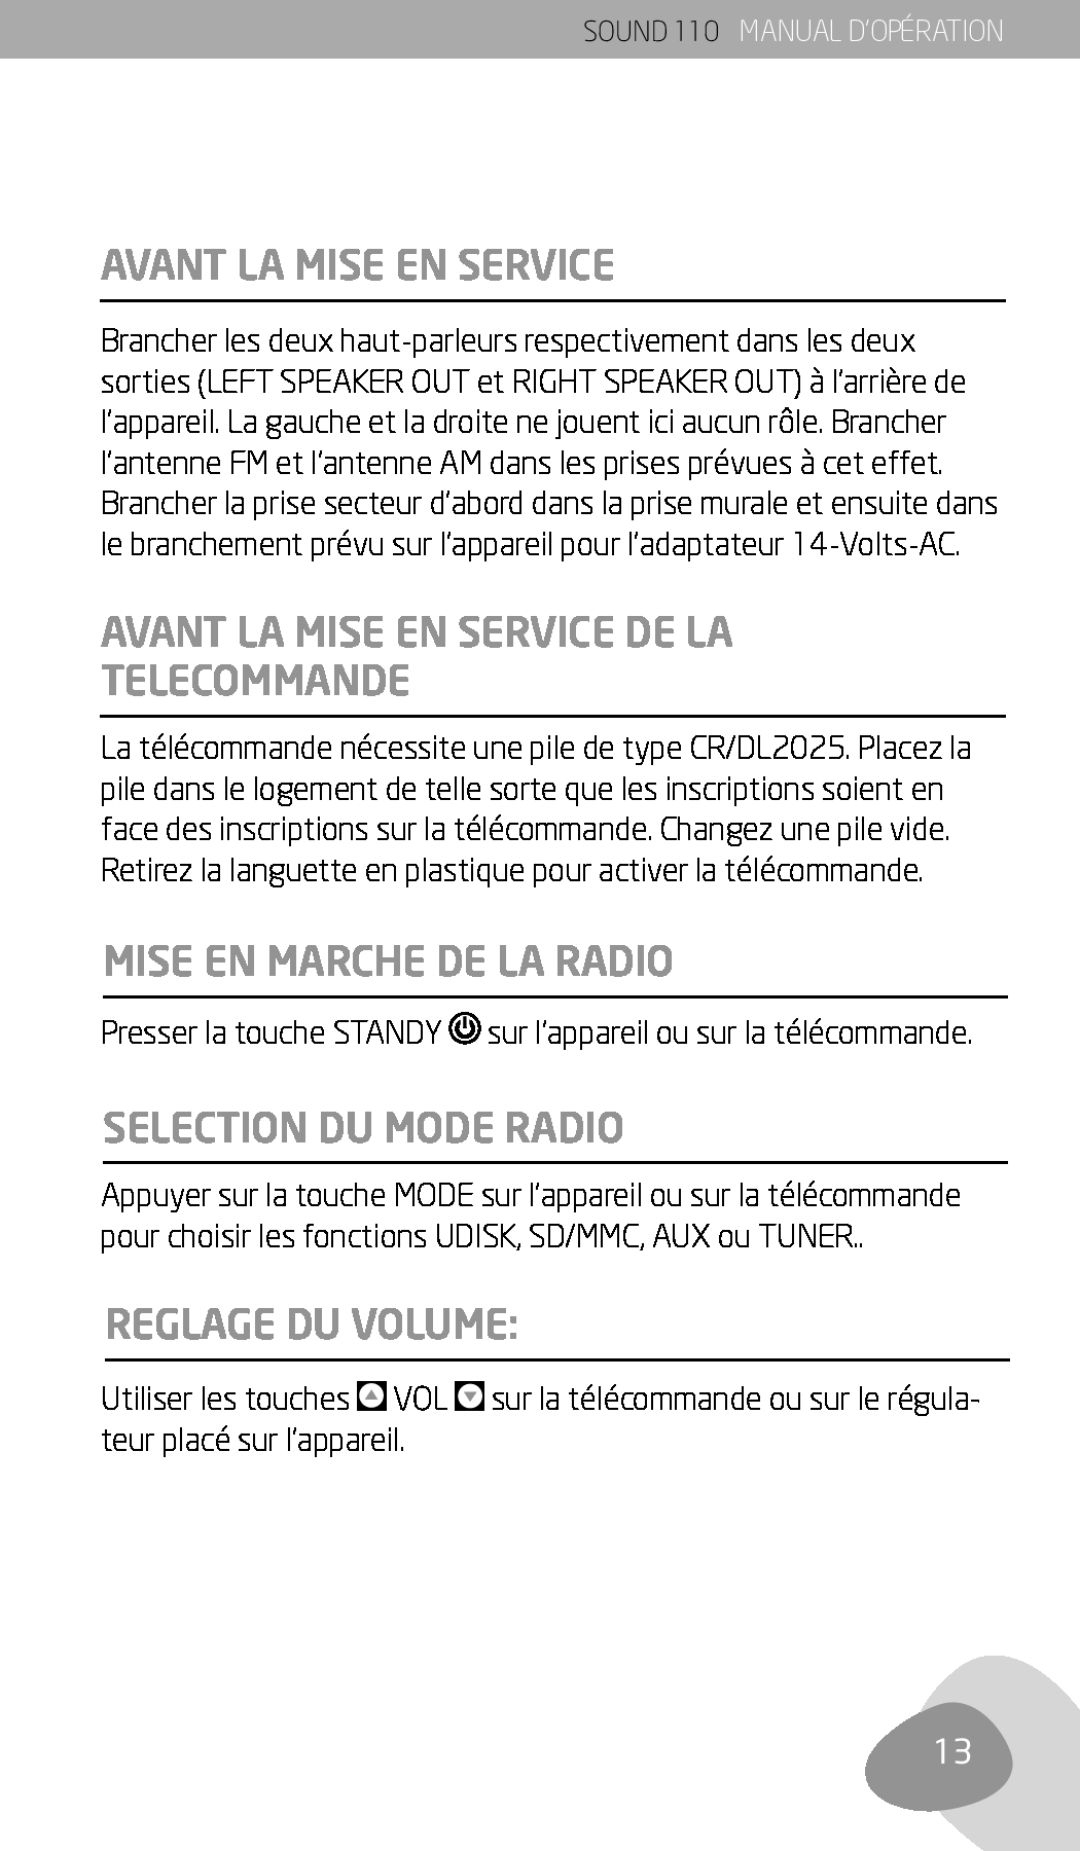 Eton 110 owner manual Avant La Mise En Service De La Telecommande, Mise En Marche De La Radio, Selection Du Mode Radio 